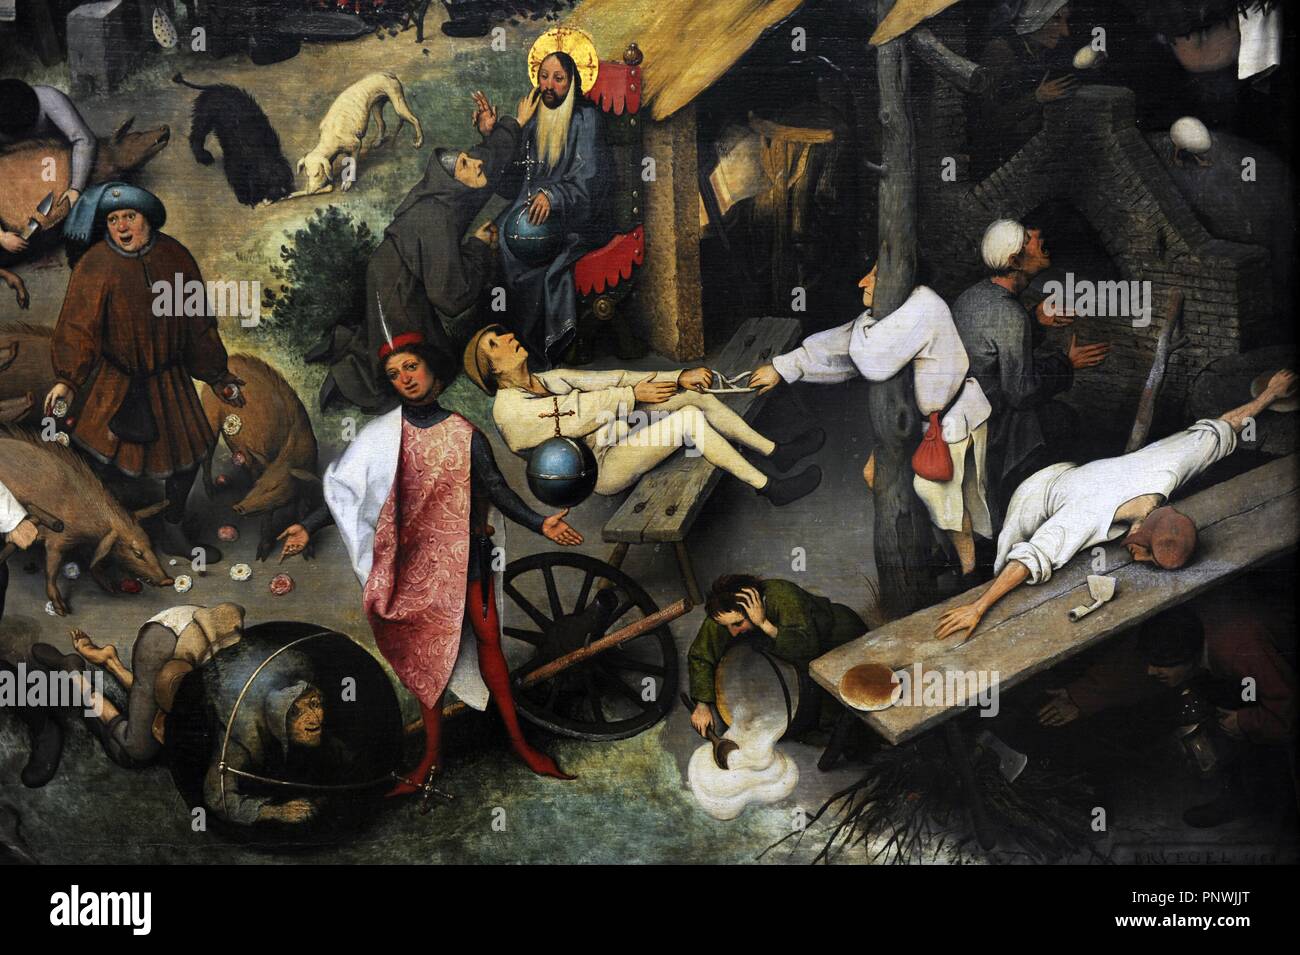 Jan Brueghel l'ancien (1568-1625). Peintre flamand. Proverbes Russisch (aussi appelé le manteau bleu ou le Topsy Turvy World), 1559. Huile sur panneau de chêne. Détail. Gemaldegalerie. Berlin. L'Allemagne. Banque D'Images